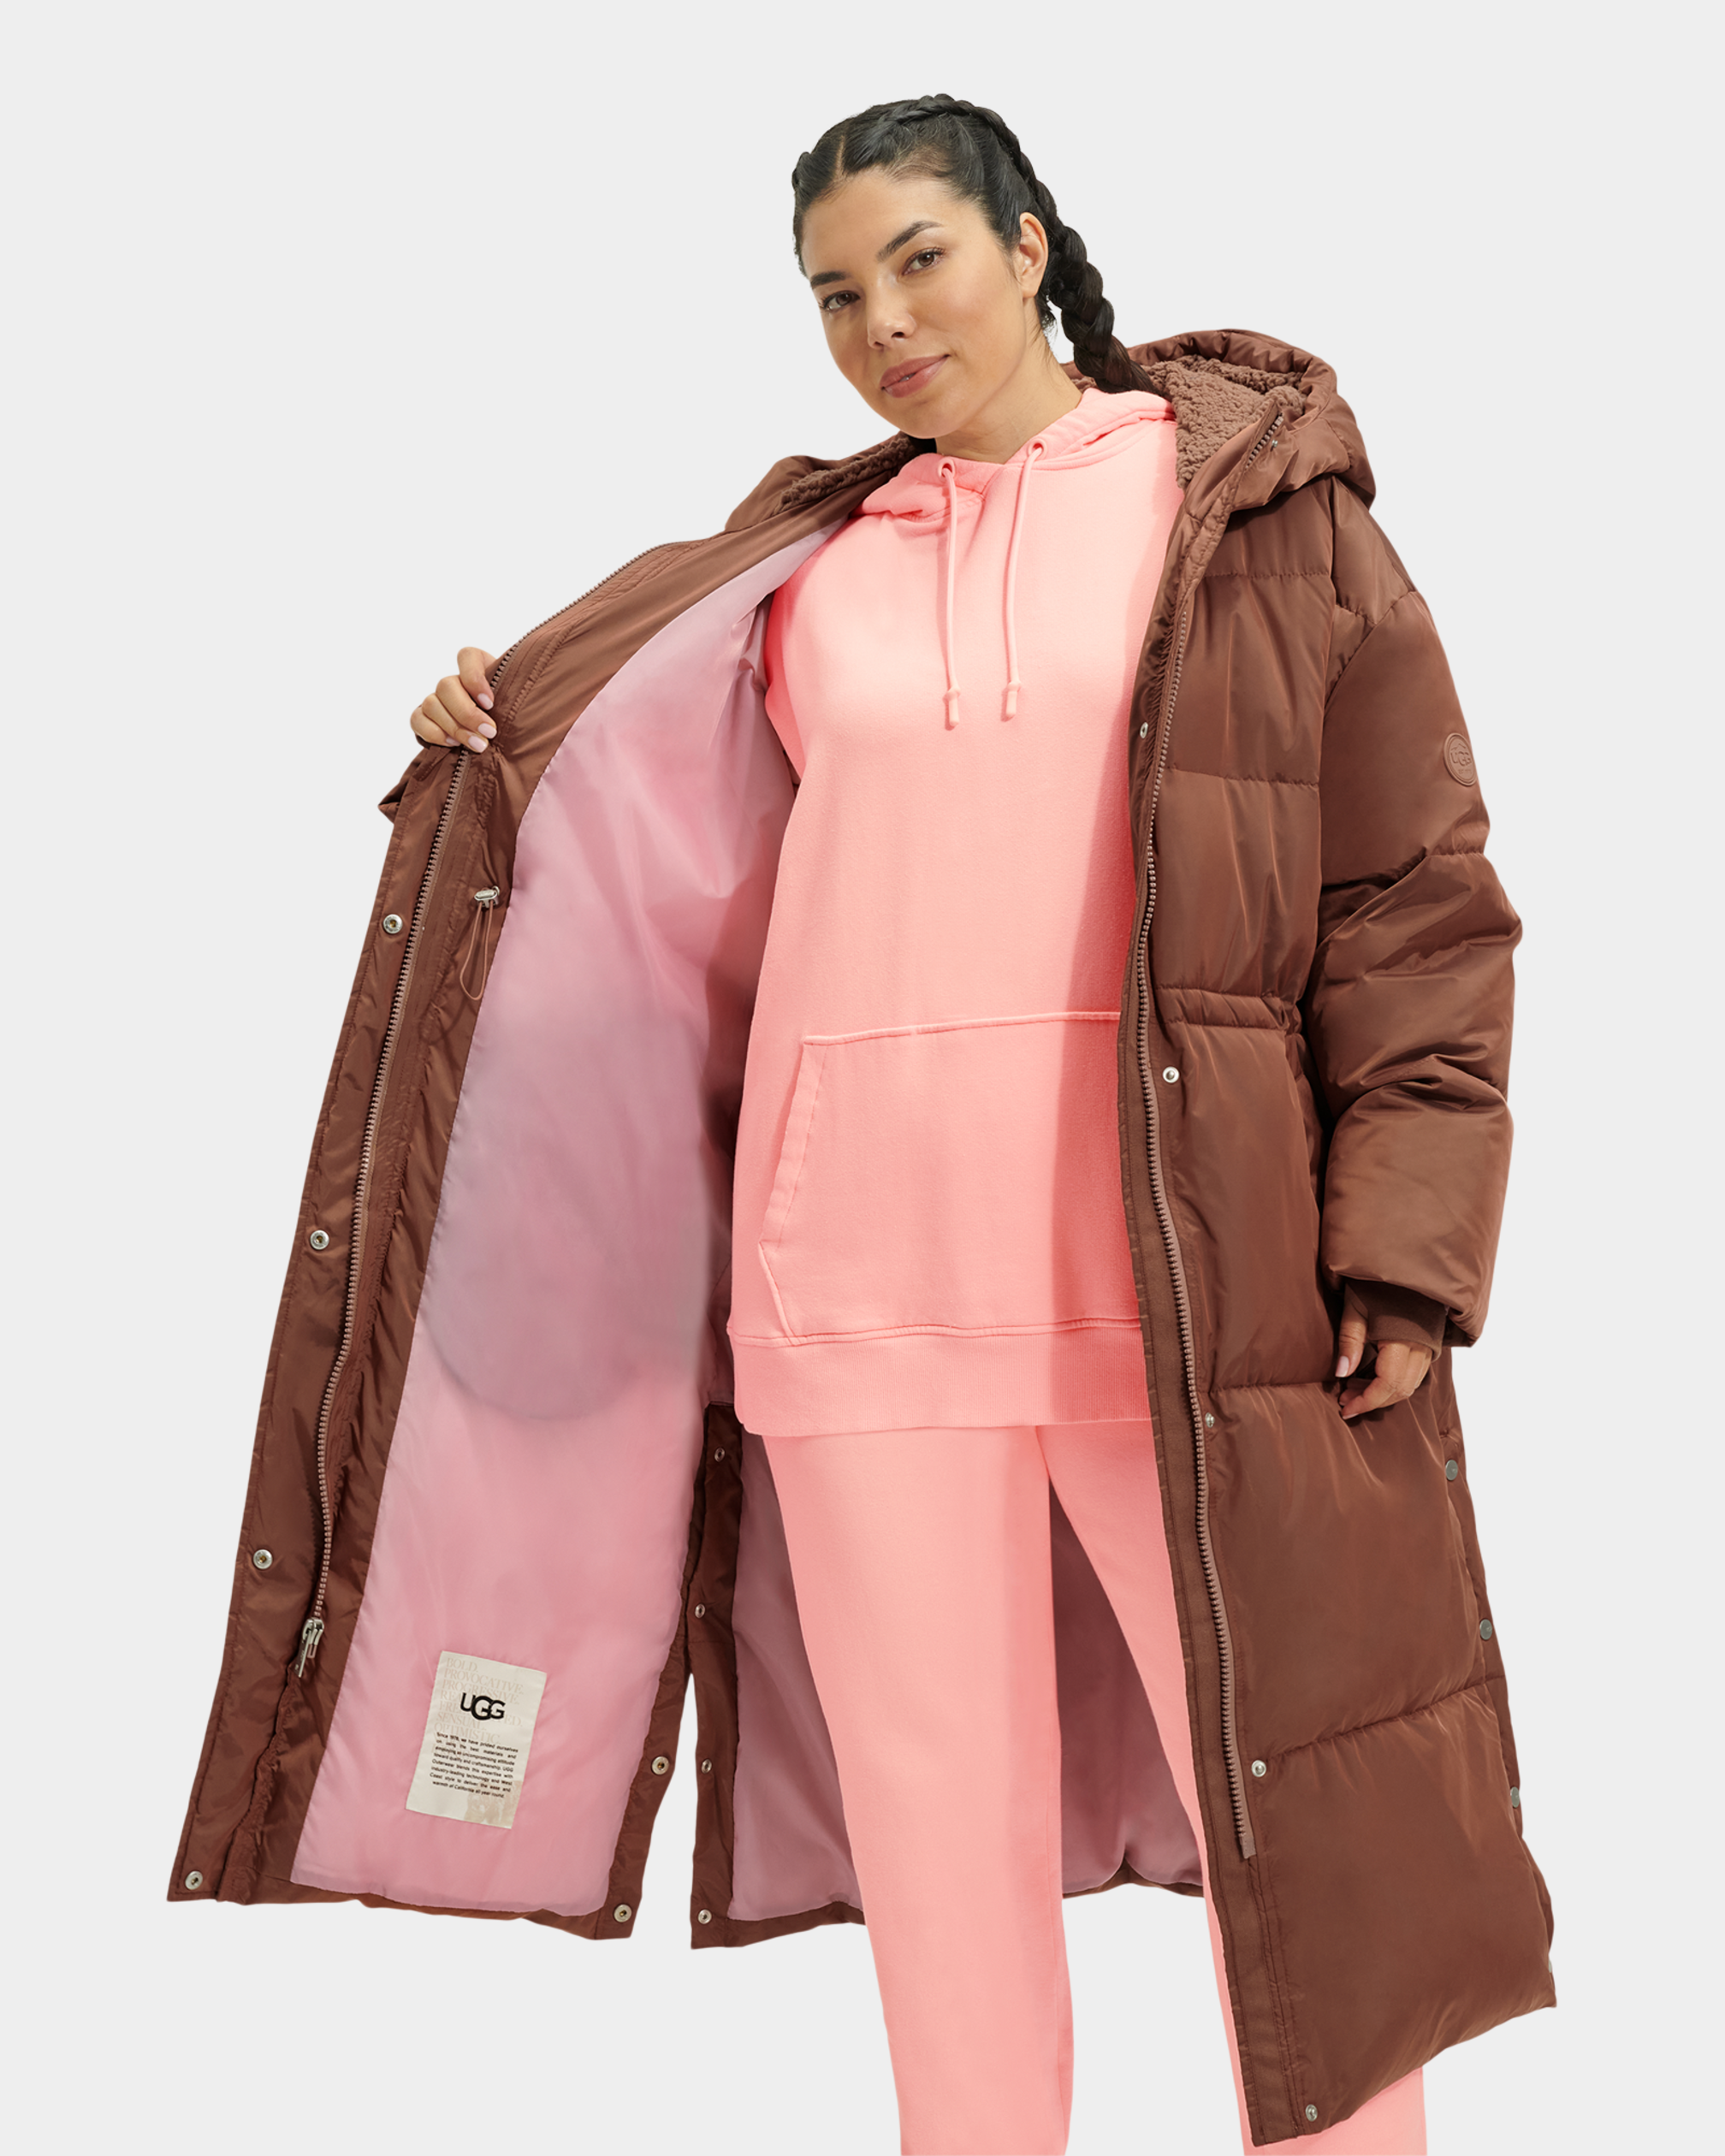 Buy Women Woolen Jacket With Kashmiri Embroidery Winter Wear Long Jacket  For Women (SkyBlue-1, XL) at Amazon.in